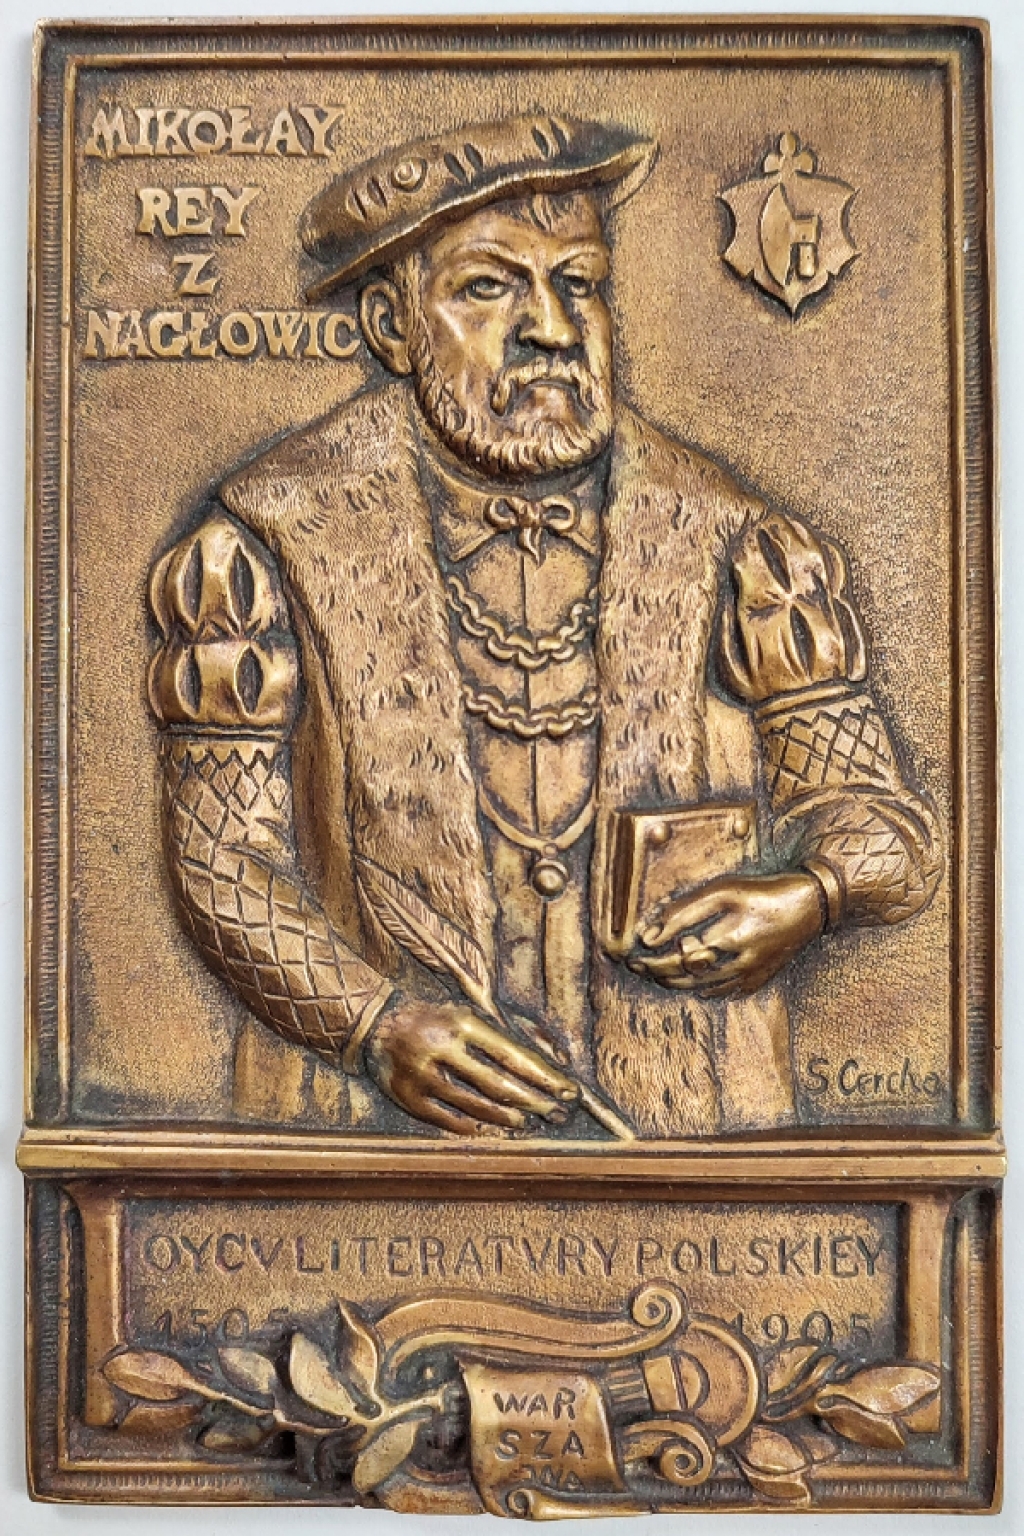 [plakieta, 1928] Mikołay Rey z Nagłowic